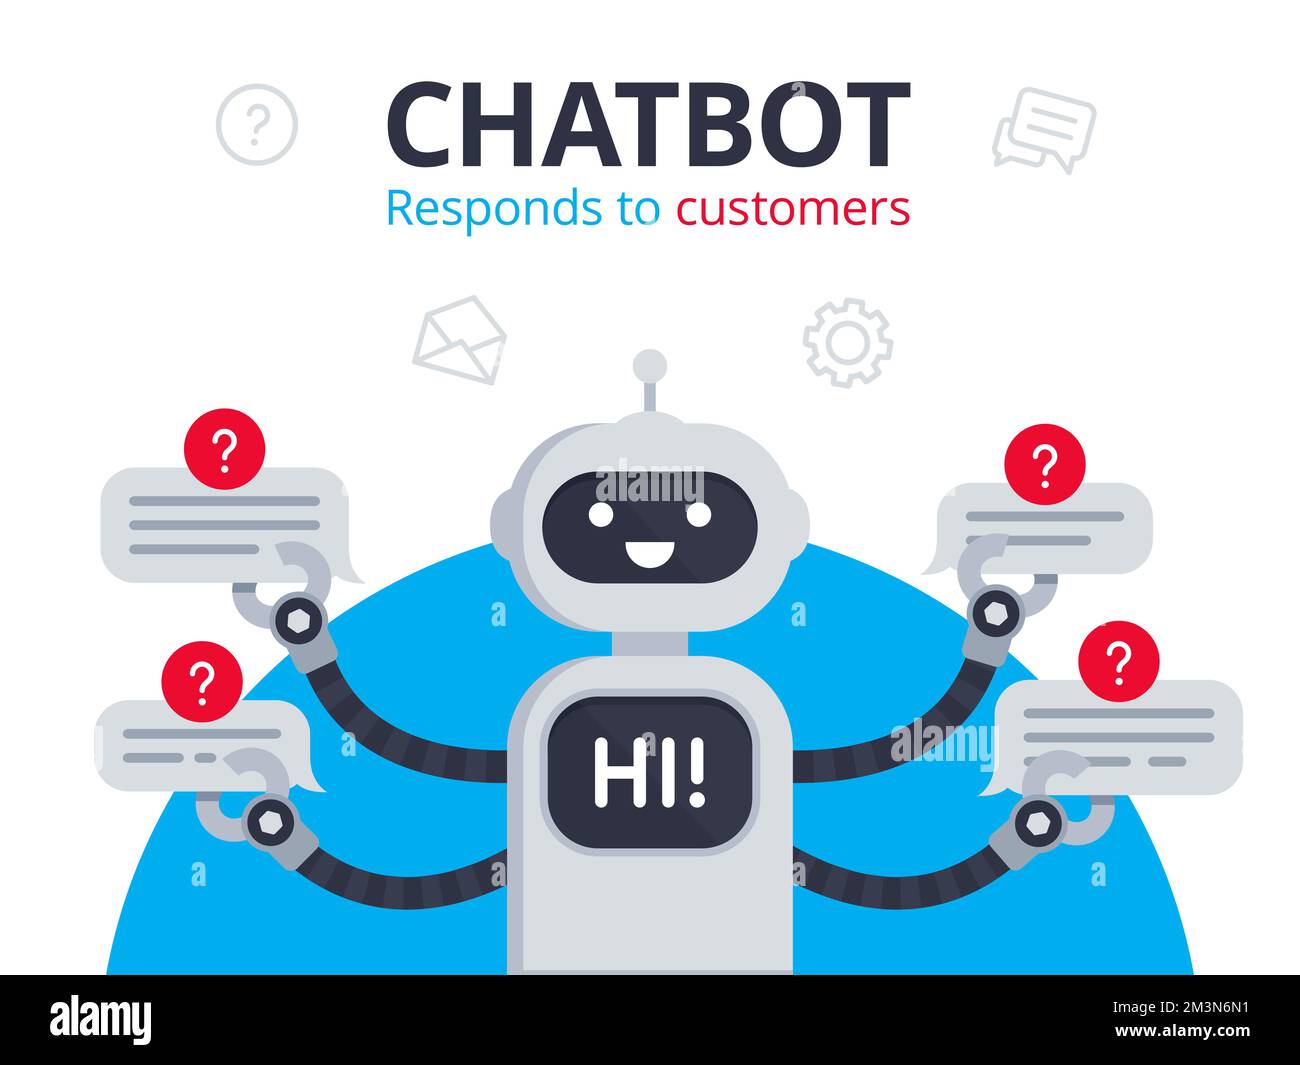 Chatbot répond aux questions des clients. Le robot souriant contient des bulles de parole et affiche le message « hi » à l'écran. Robot de service client. Illustration vectorielle Illustration de Vecteur